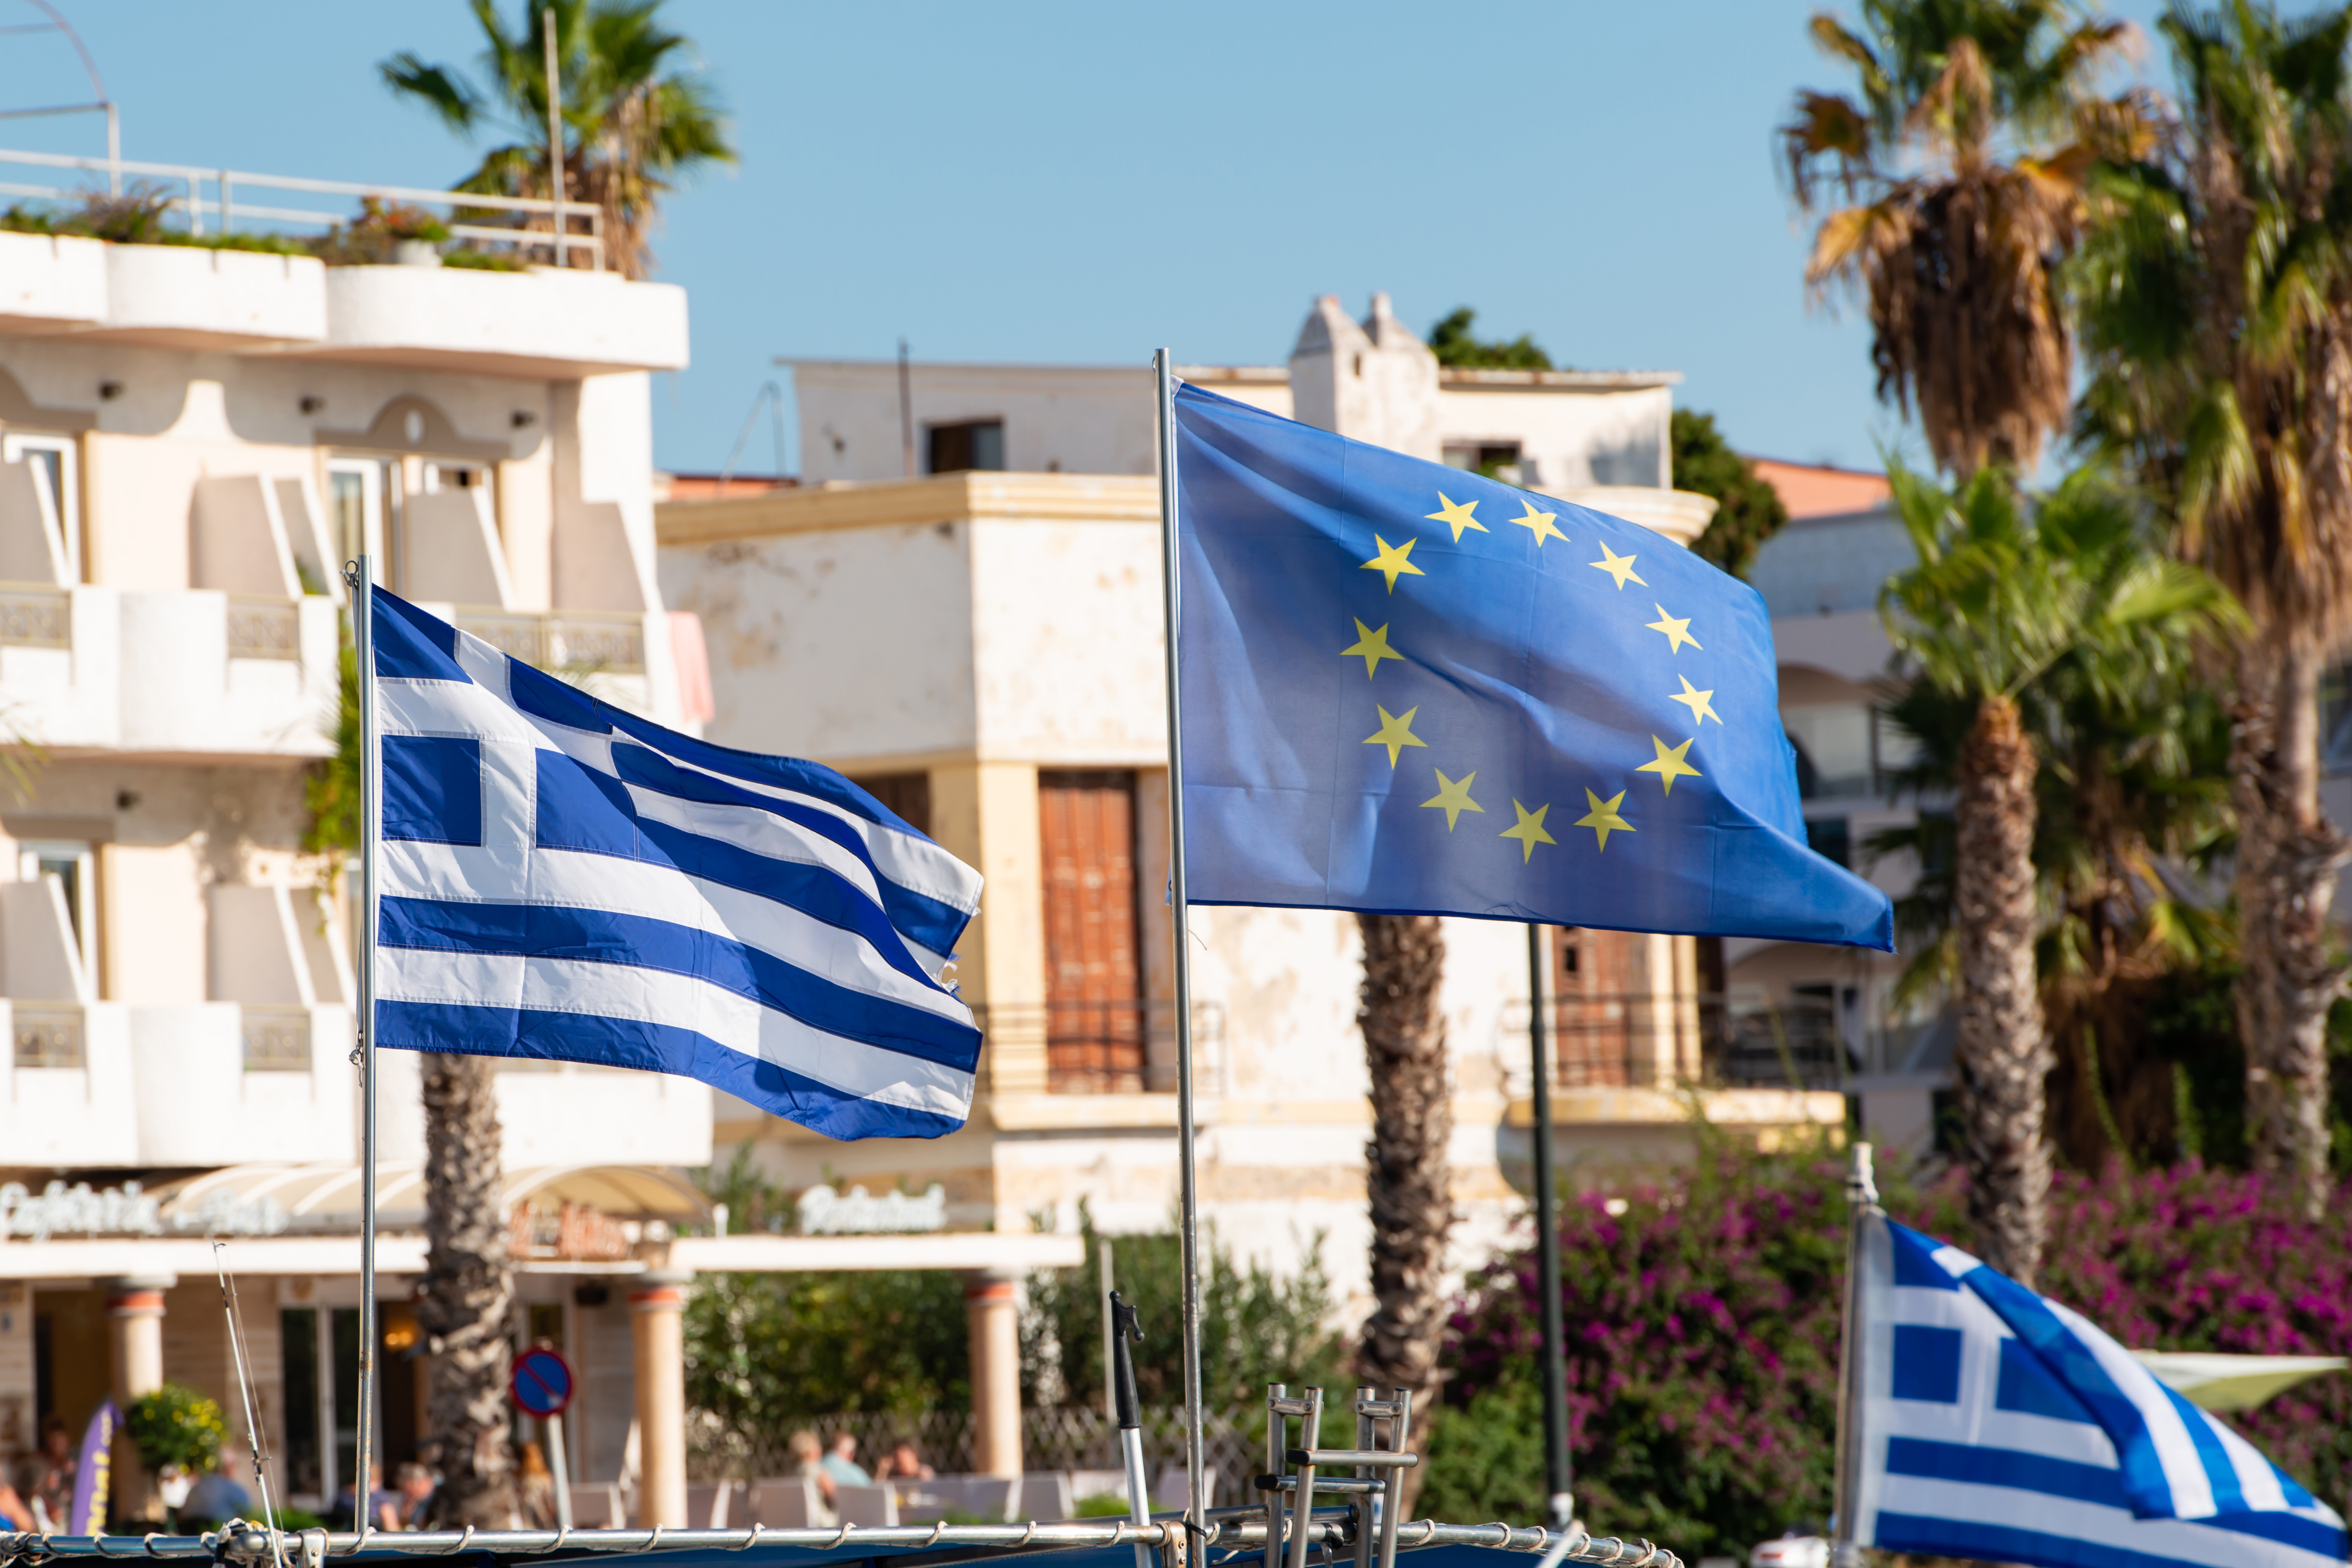 Символика европейской страны, резидентство в которой дает греческий ВНЖ